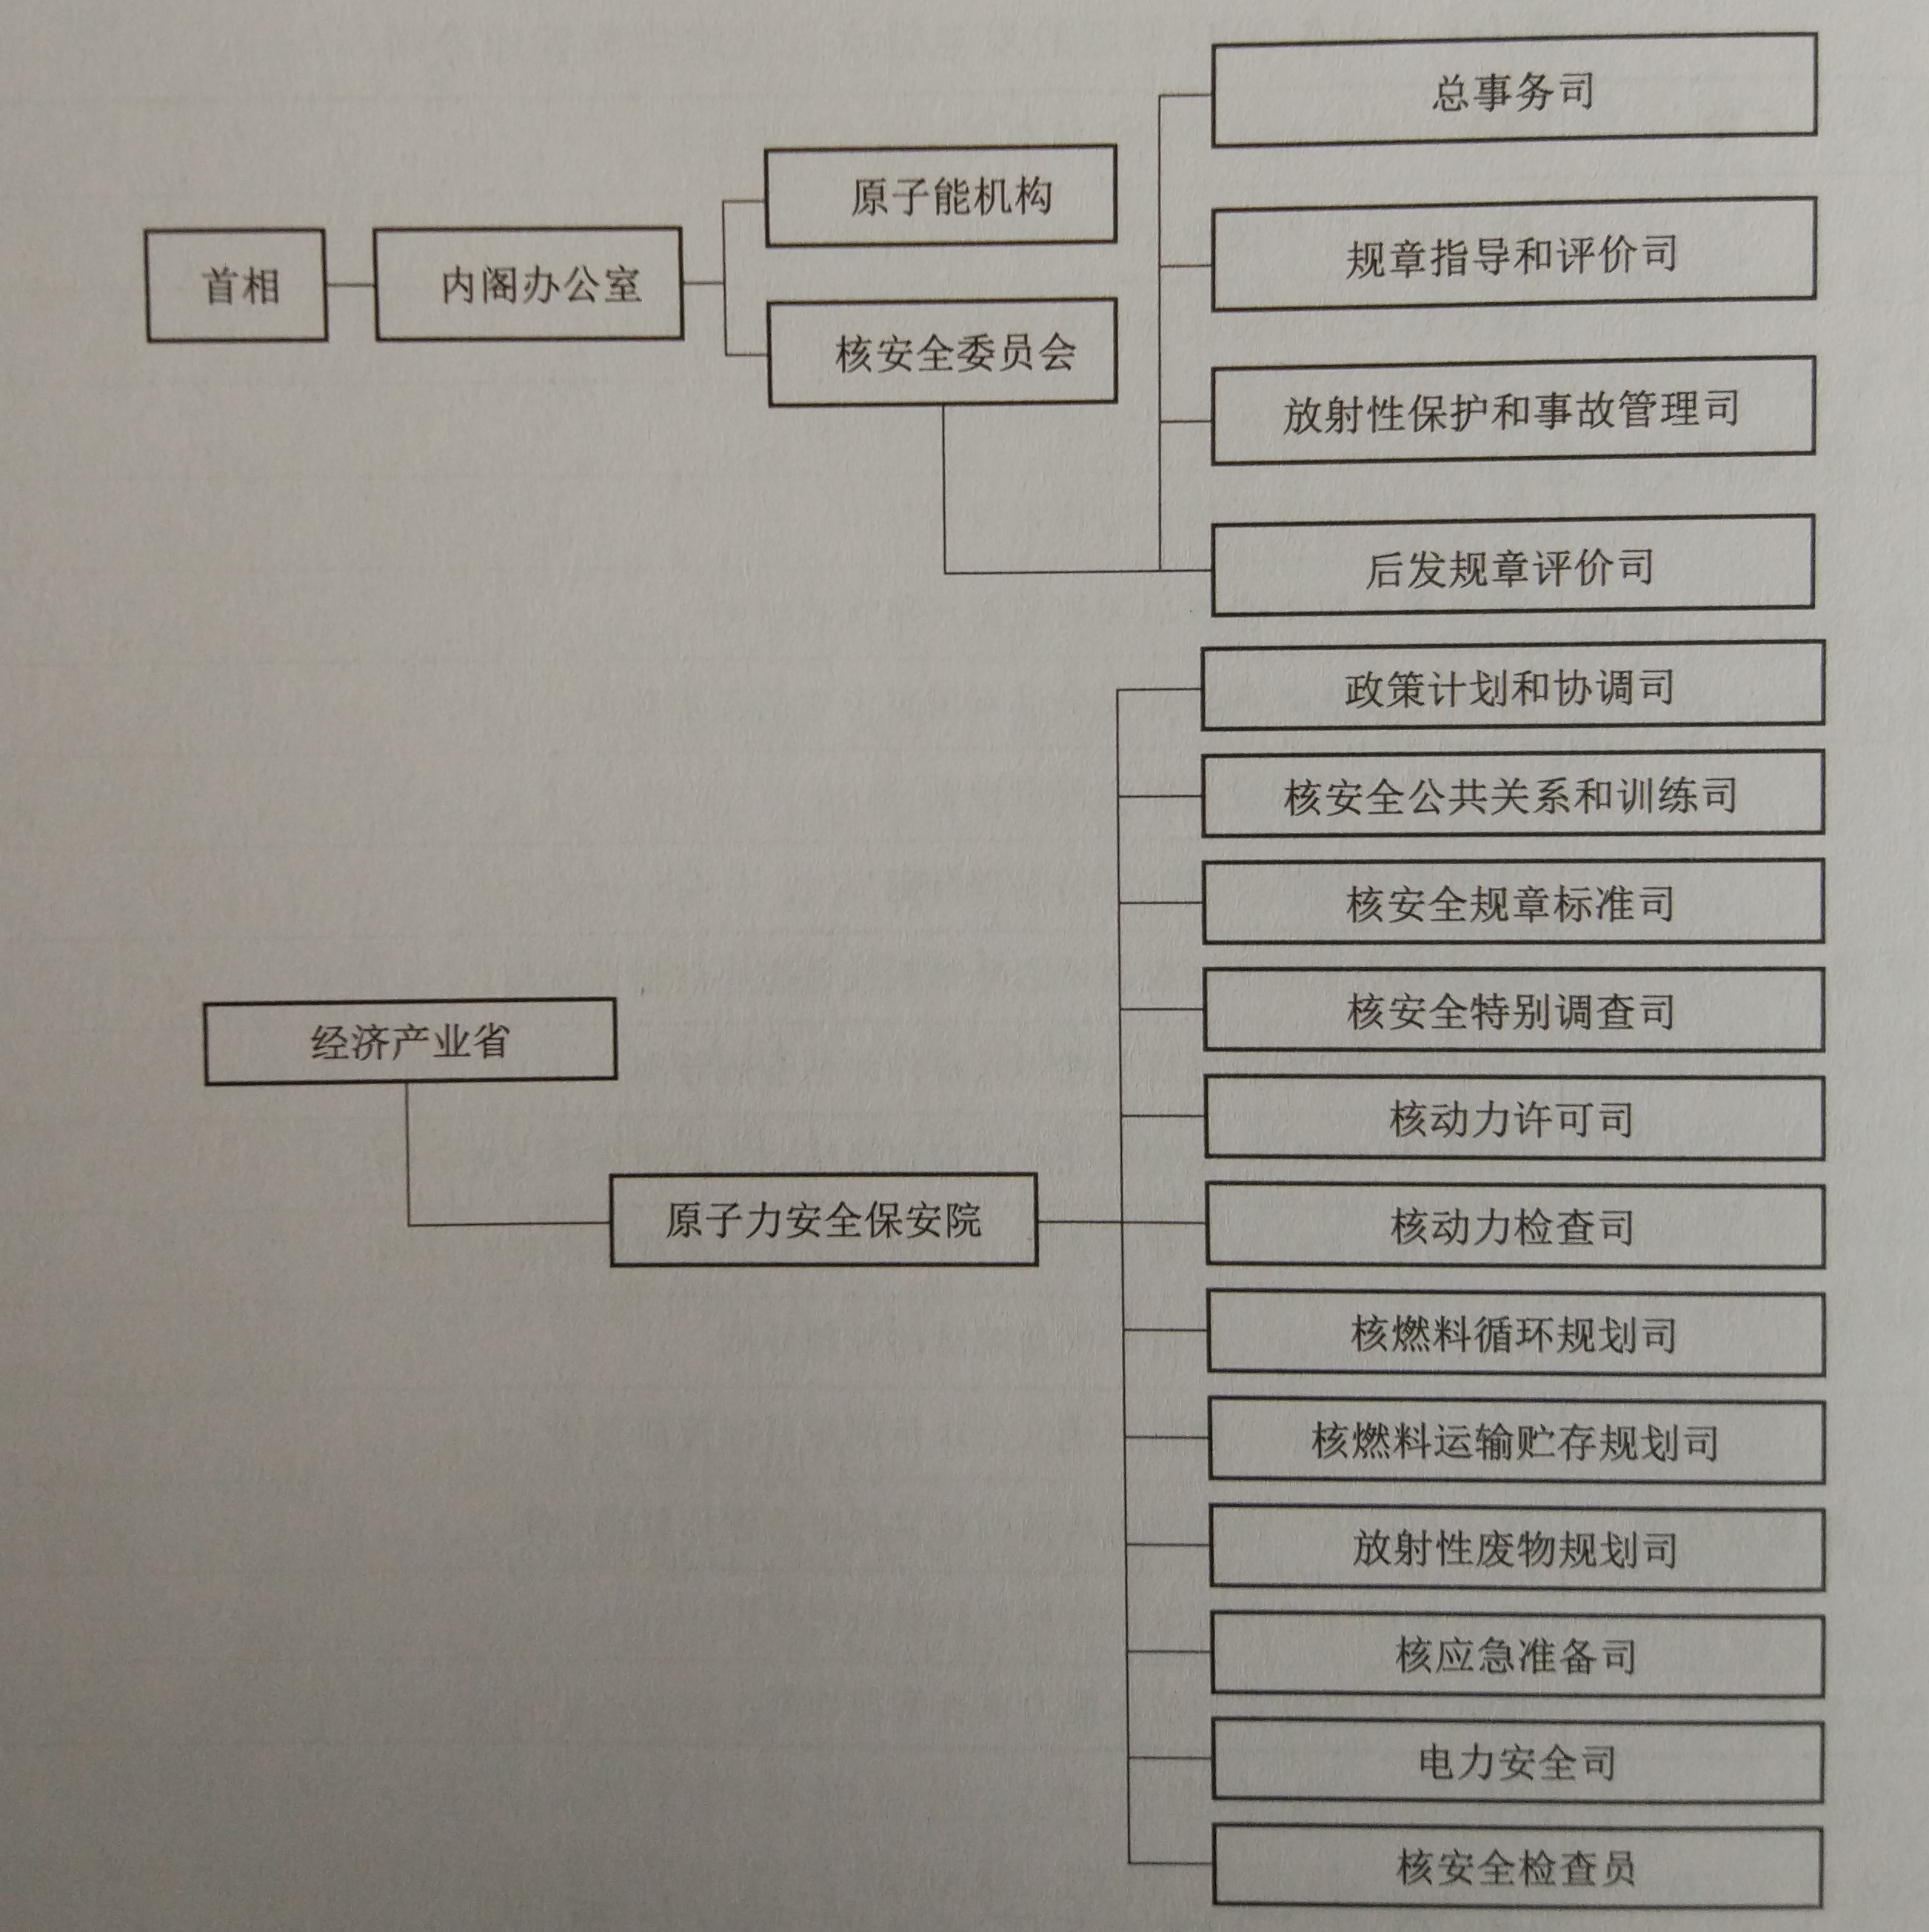 日本核設施安全監管的行政組織圖